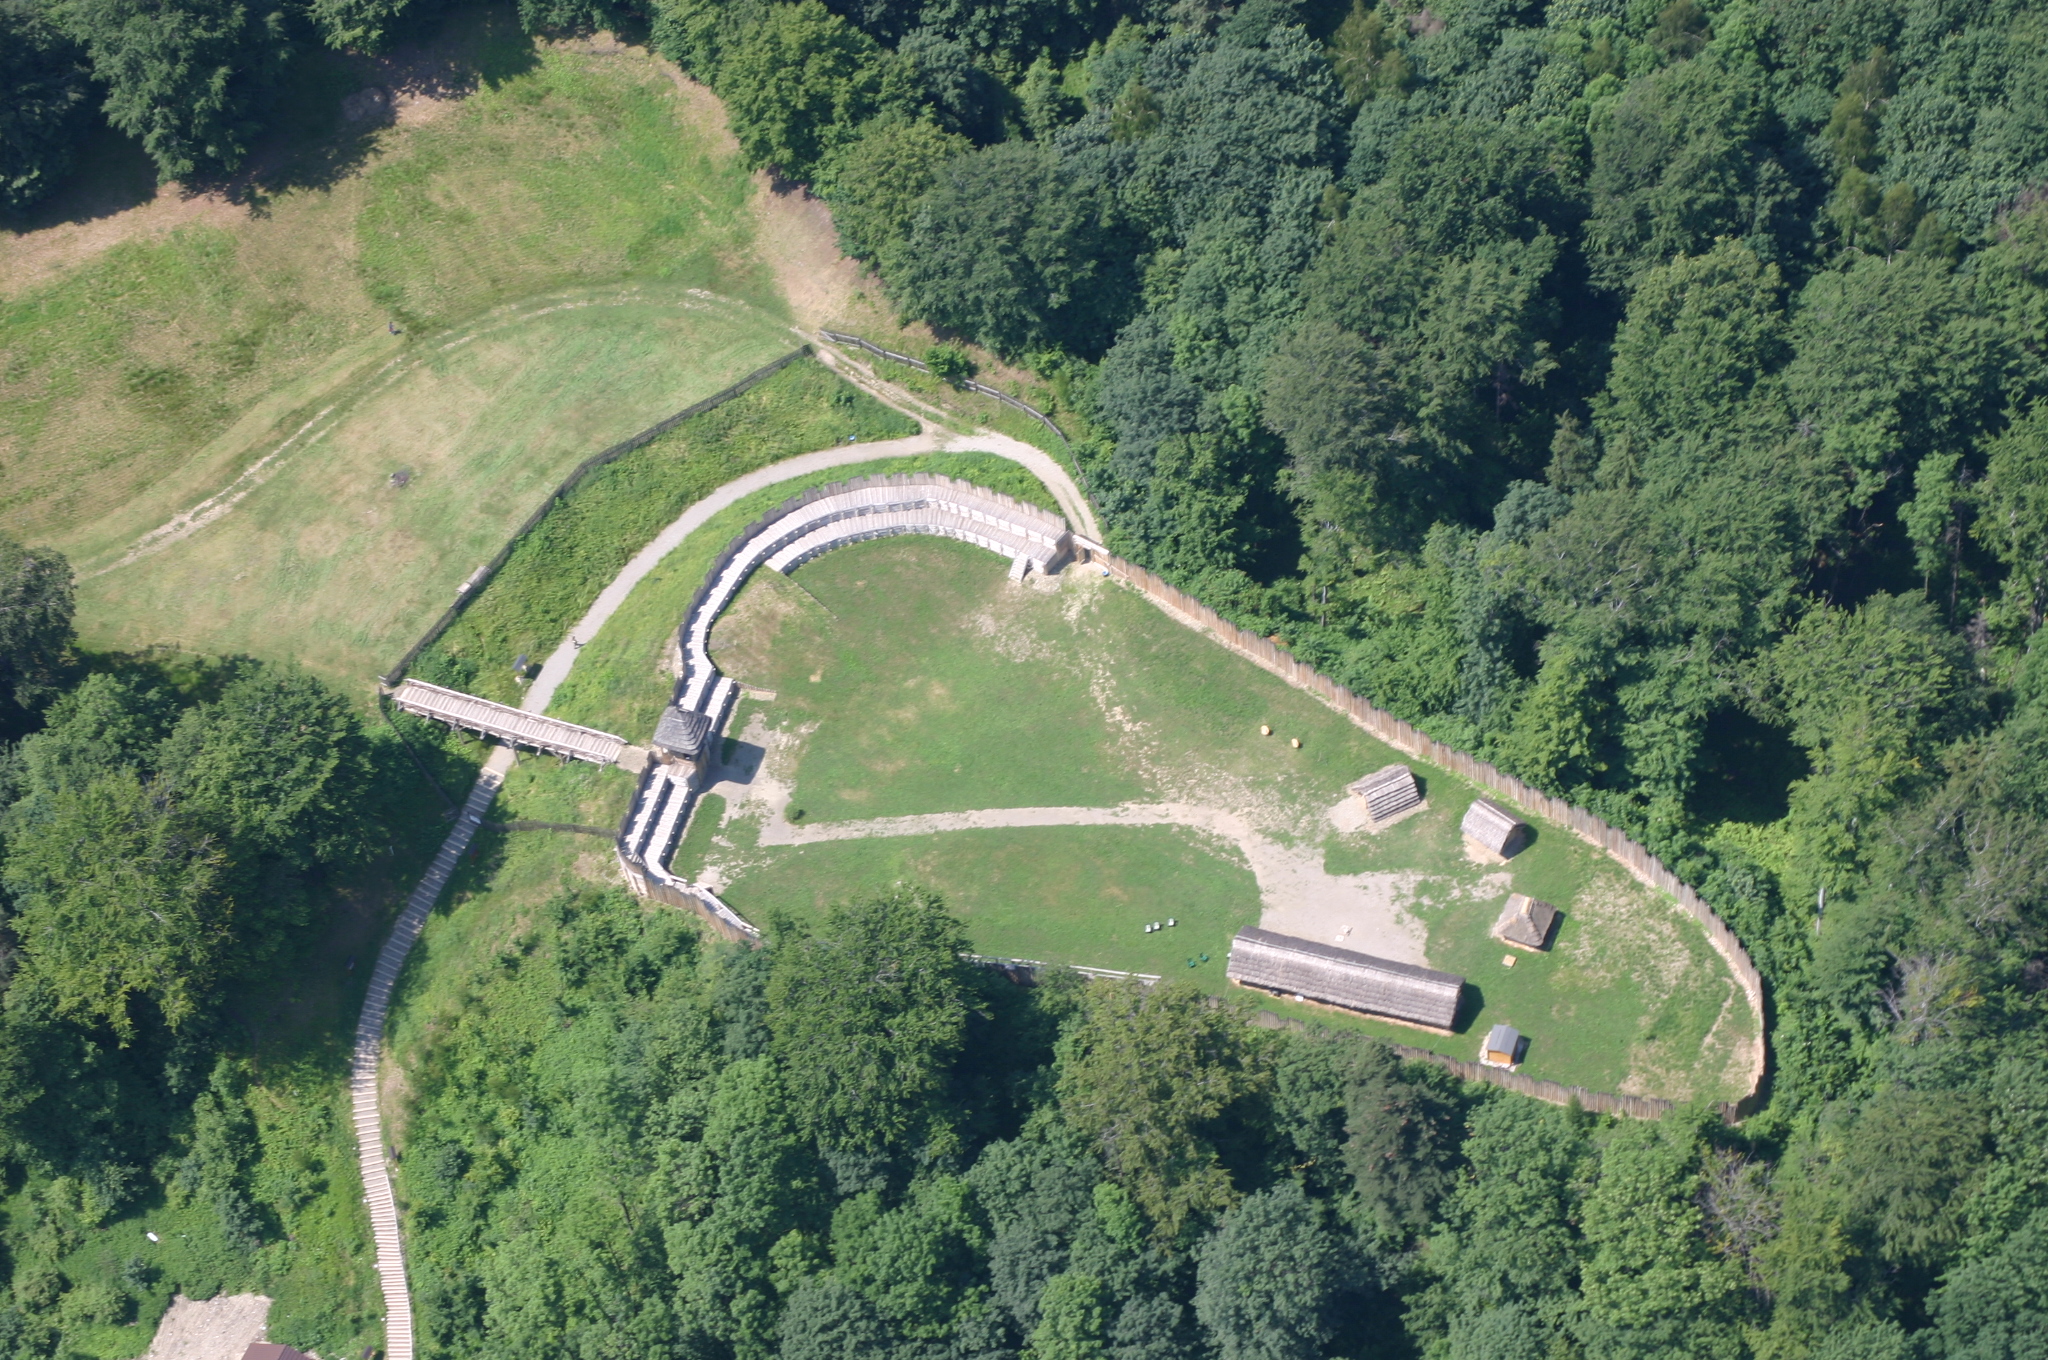 Letecký pohled na hradisko Chotěbuz - Podobora, kde v současnosti funguje archeopark s rekonstrukcemi opevnění, vstupní brány a části vnitřní zástavby. 